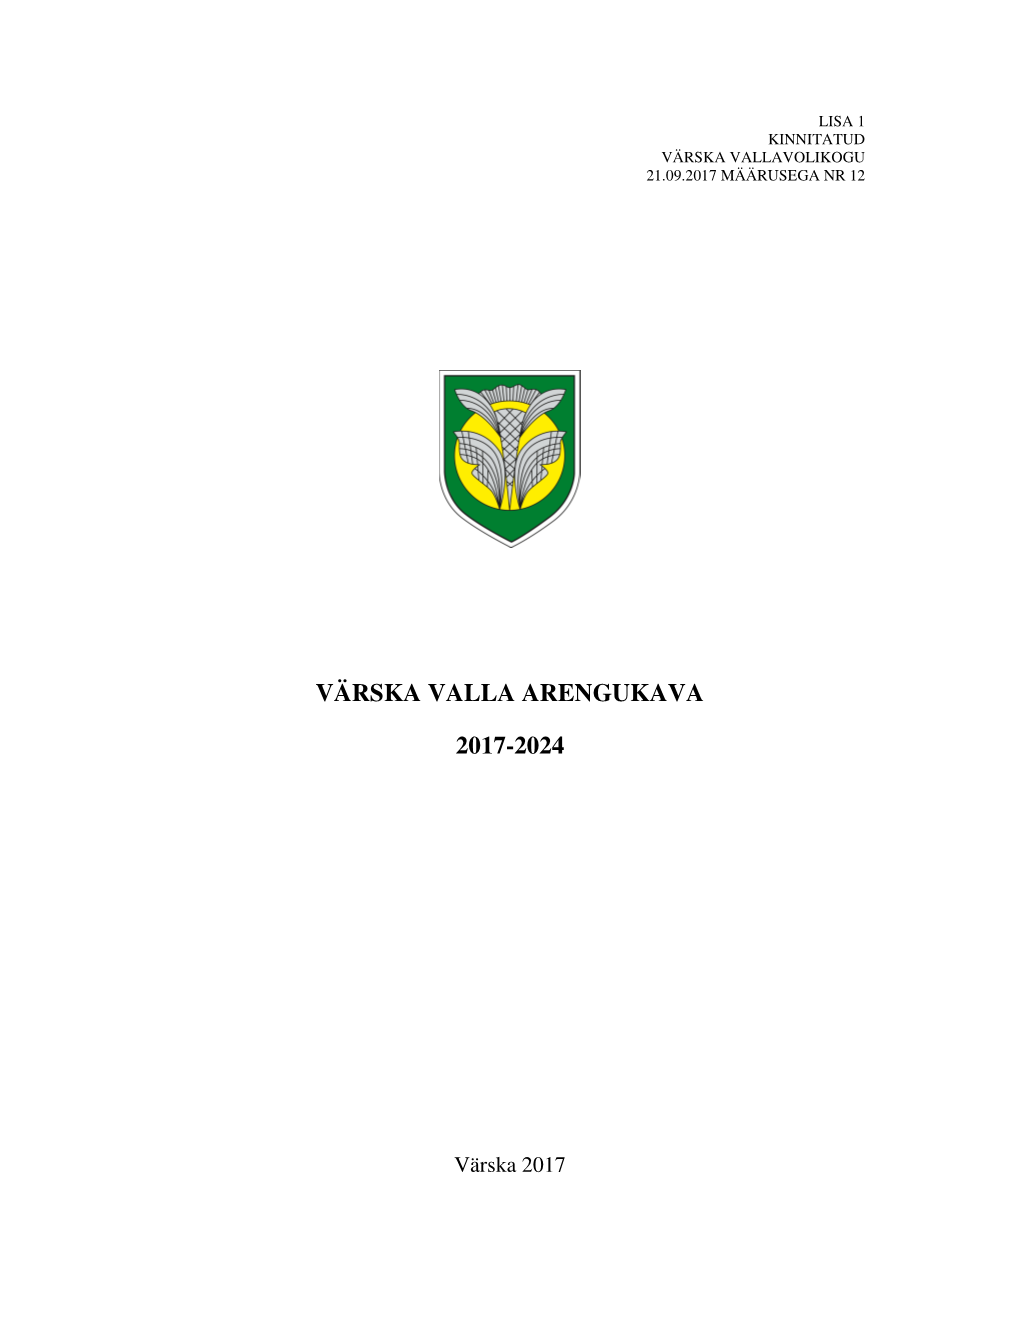 Värska Valla Arengukava 2017-2024